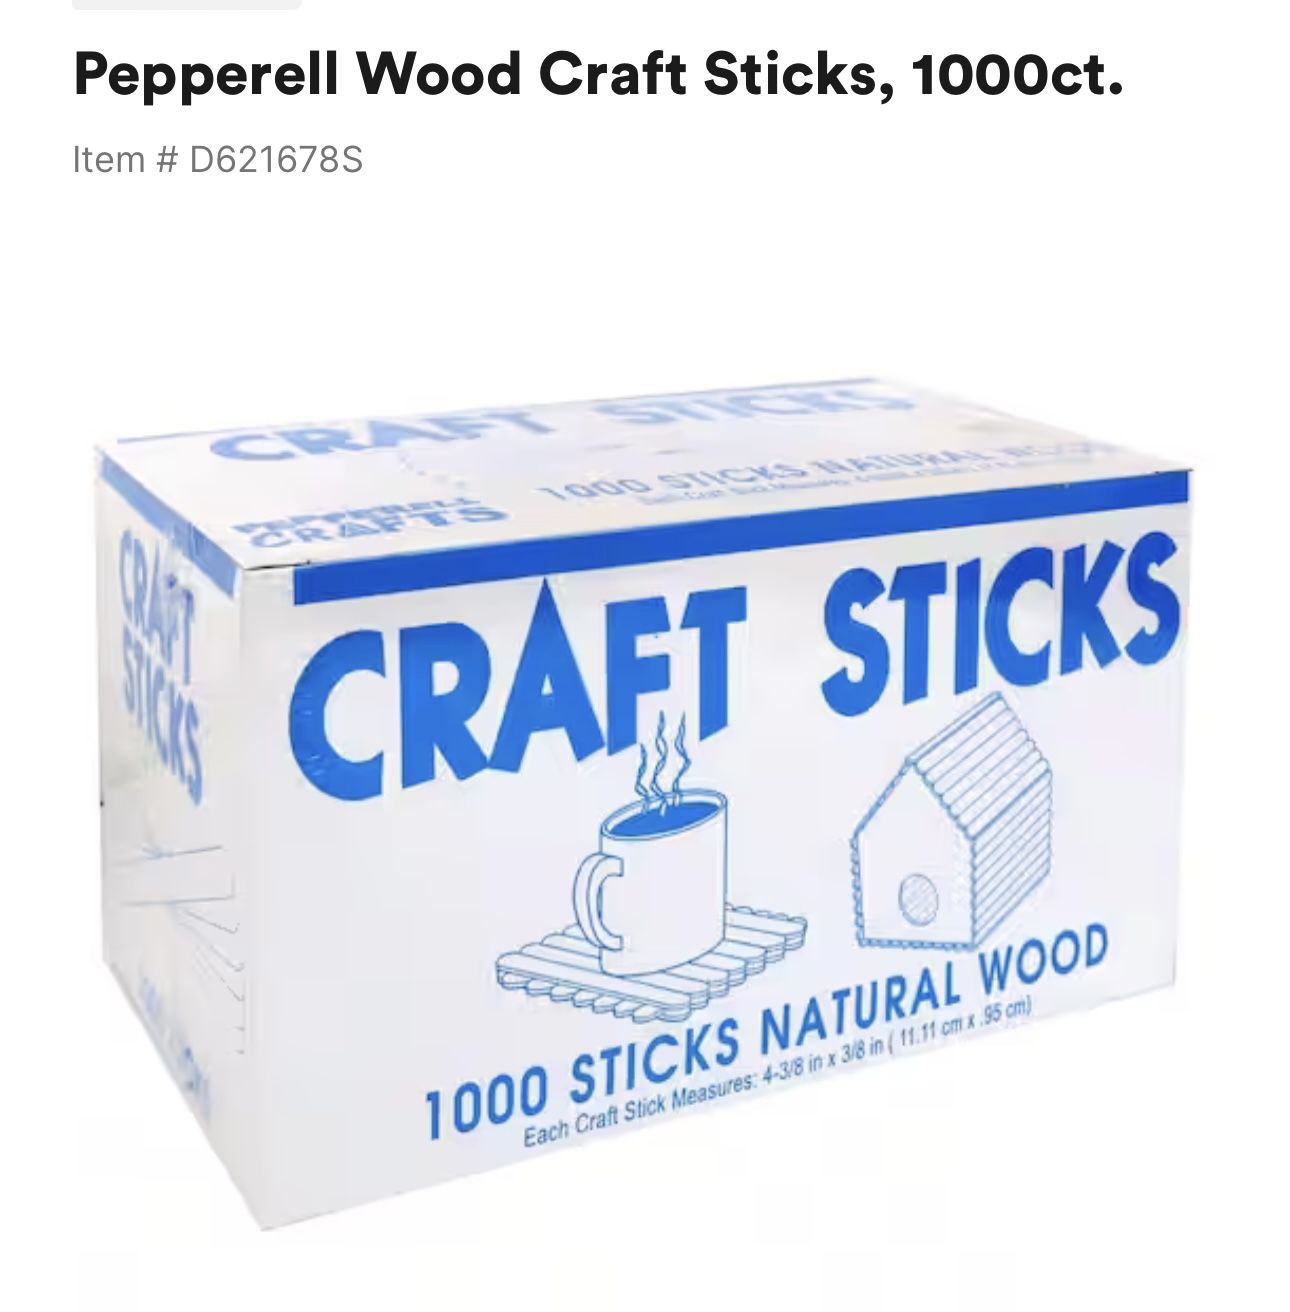 Pepperell Craft Sticks